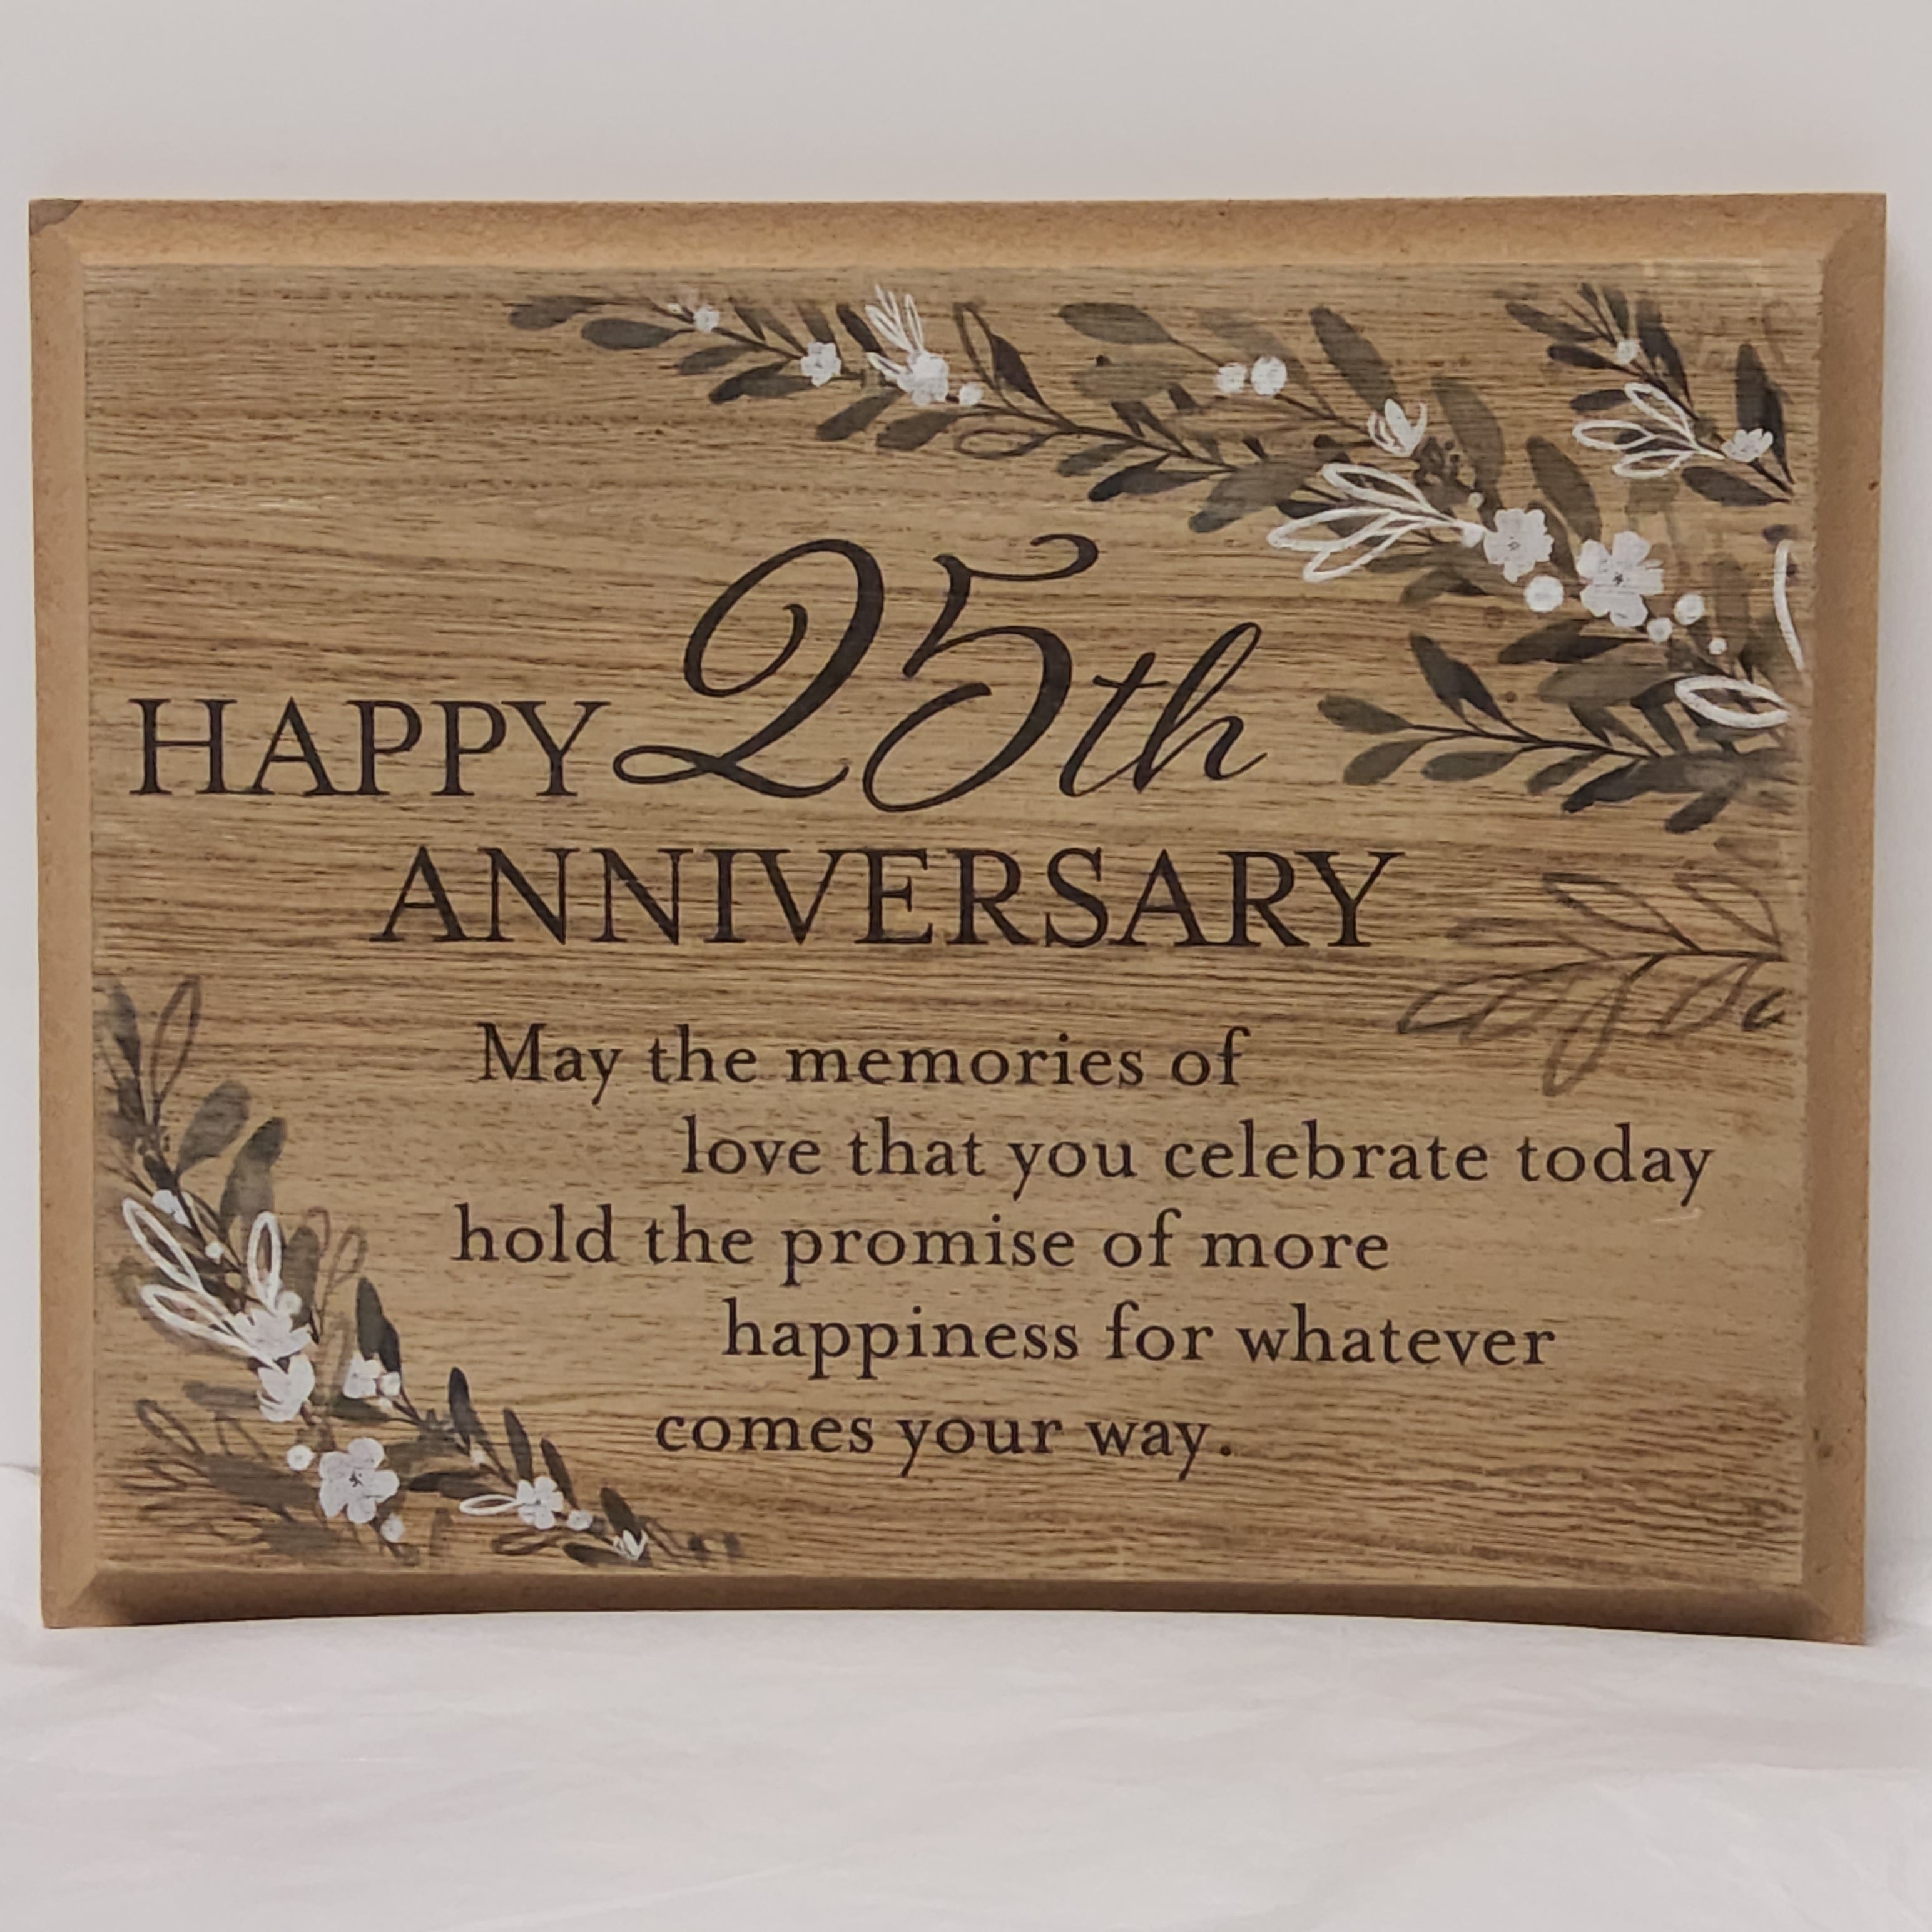 Happy 25th Anniversary - Wood Plaque CS25157